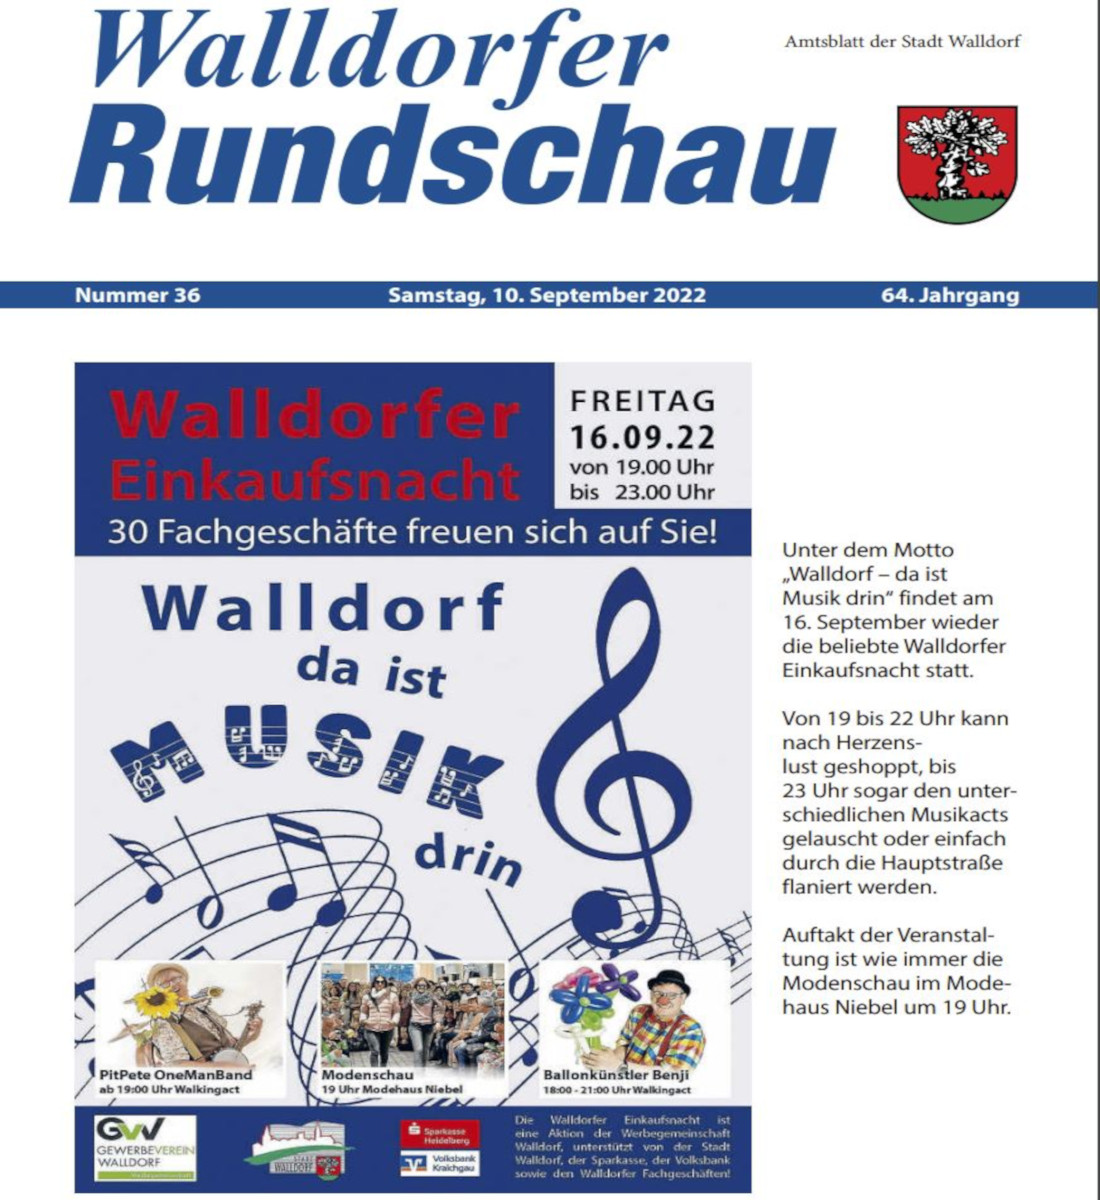 Die Walldorfer Rundschau 2022 Nr. 36 als E-paper | Bildschirmabgriff